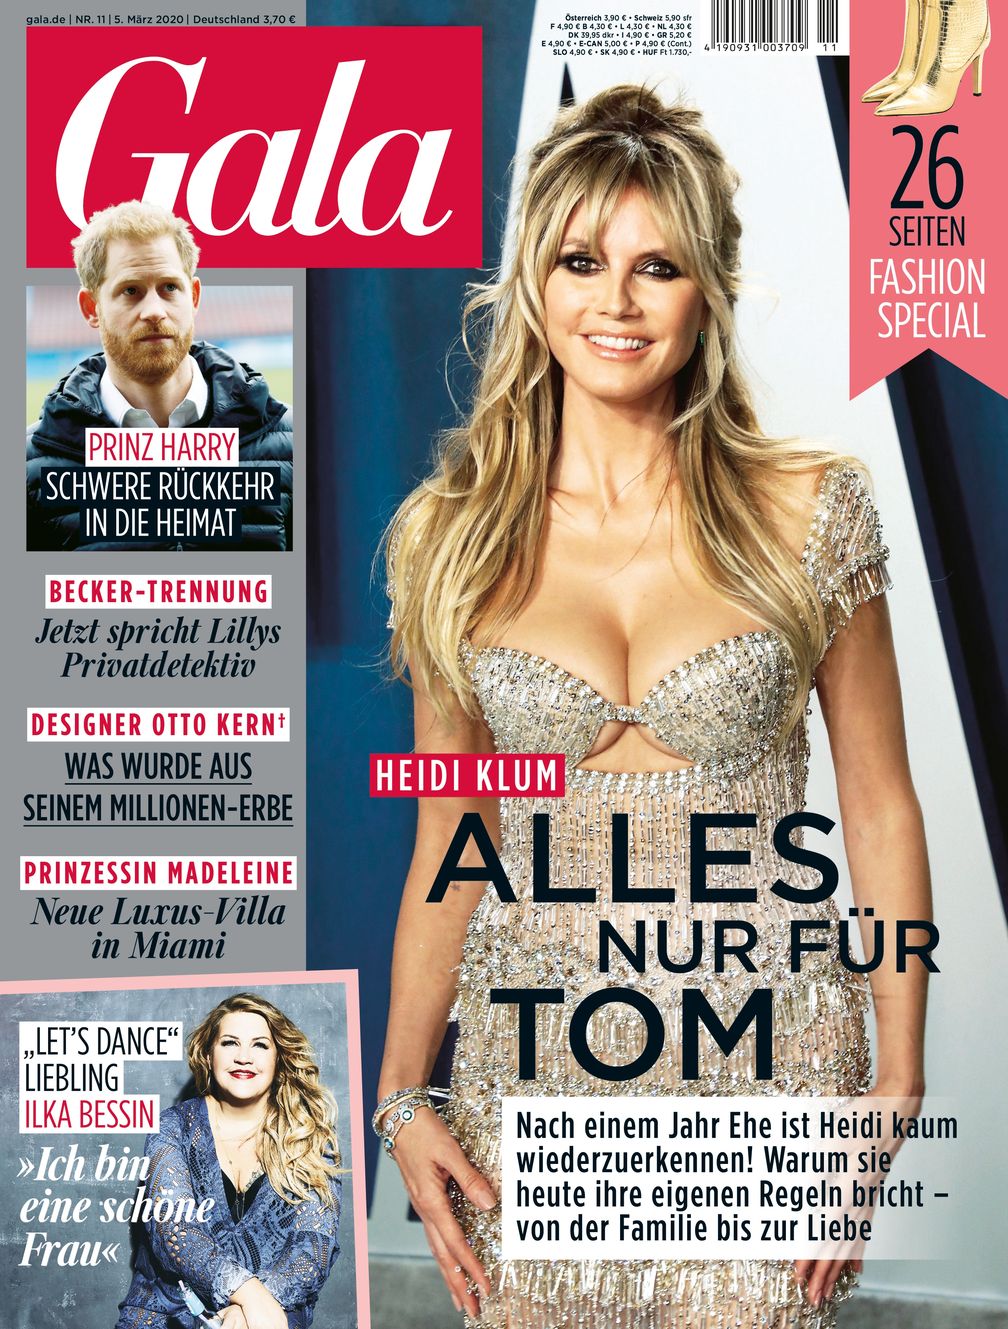 GALA Cover 11/2020 (EVT: 5. März 2020)  Bild: "obs/Gruner+Jahr, Gala"